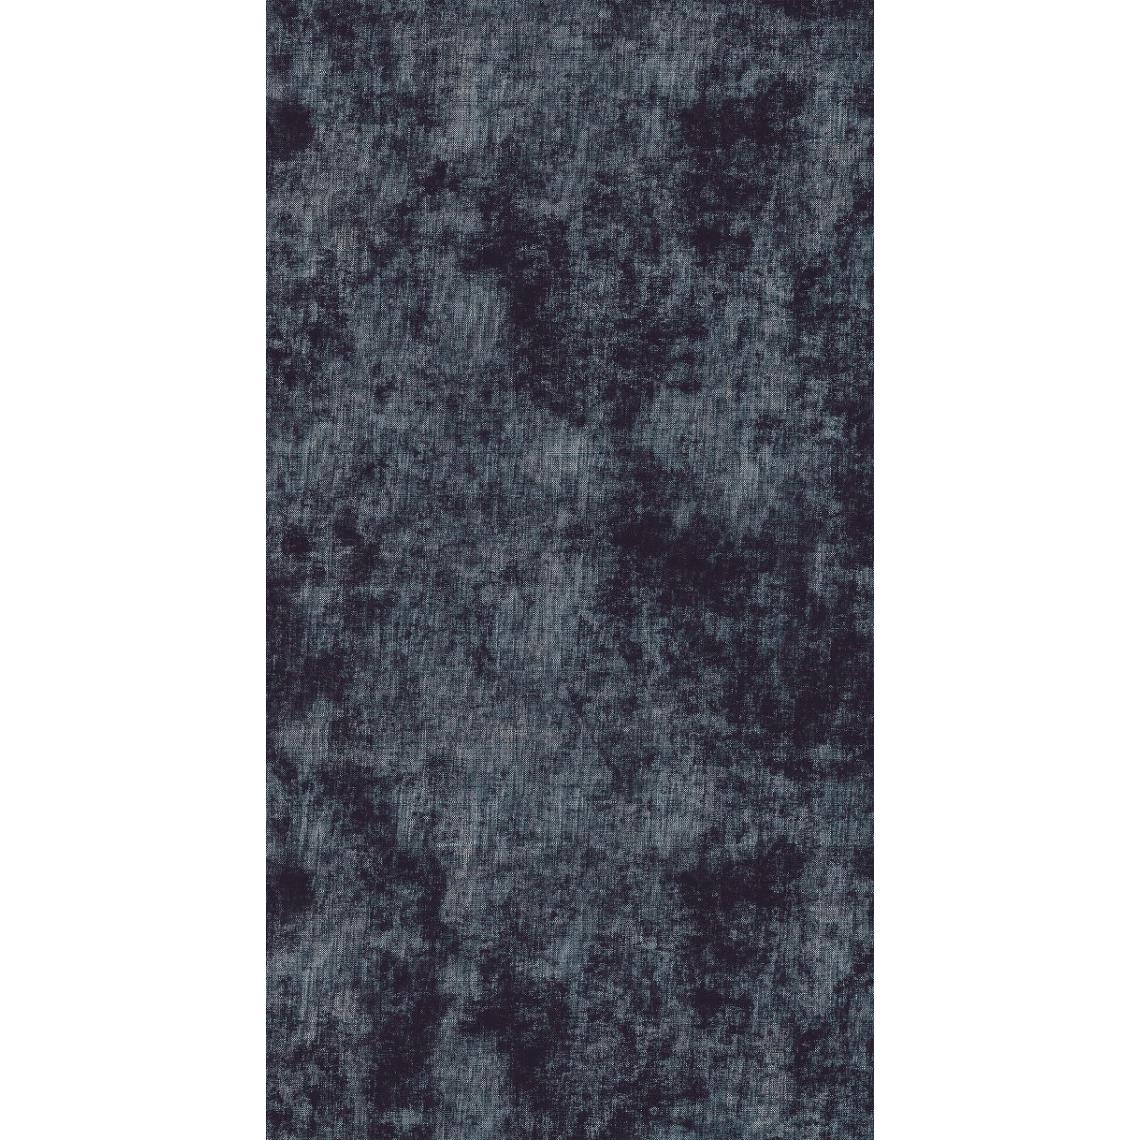 Homemania - HOMEMANIA Tapis Imprimé Dark 1 - Résumé - Décoration de Maison - antidérapants - Pour Salon, séjour, chambre à coucher - Multicolore en Polyester, Coton, 100 x 200 cm - Tapis